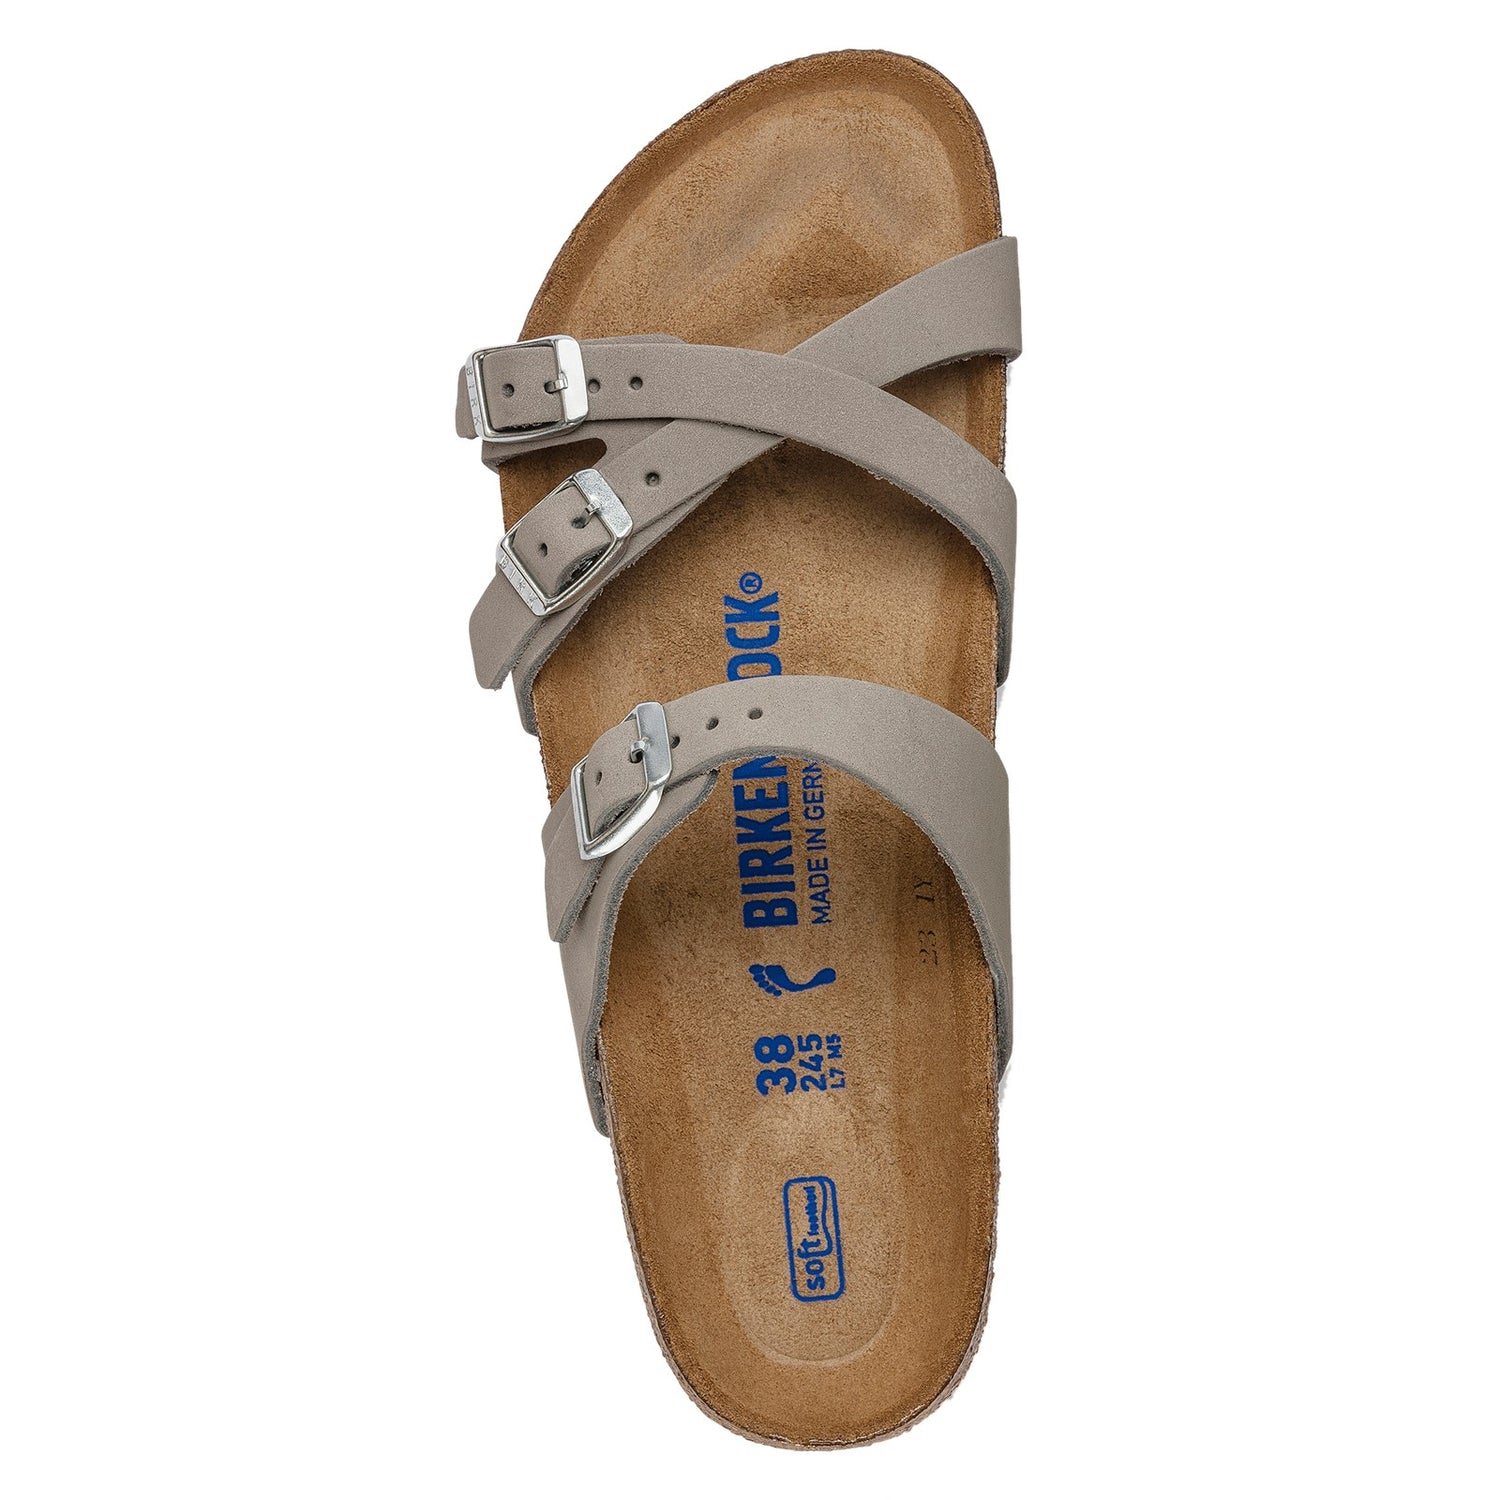 Peltz Shoes  Women's Birkenstock Franca Soft Footbed Sandal - Narrow Width DOVE 1023 354 N